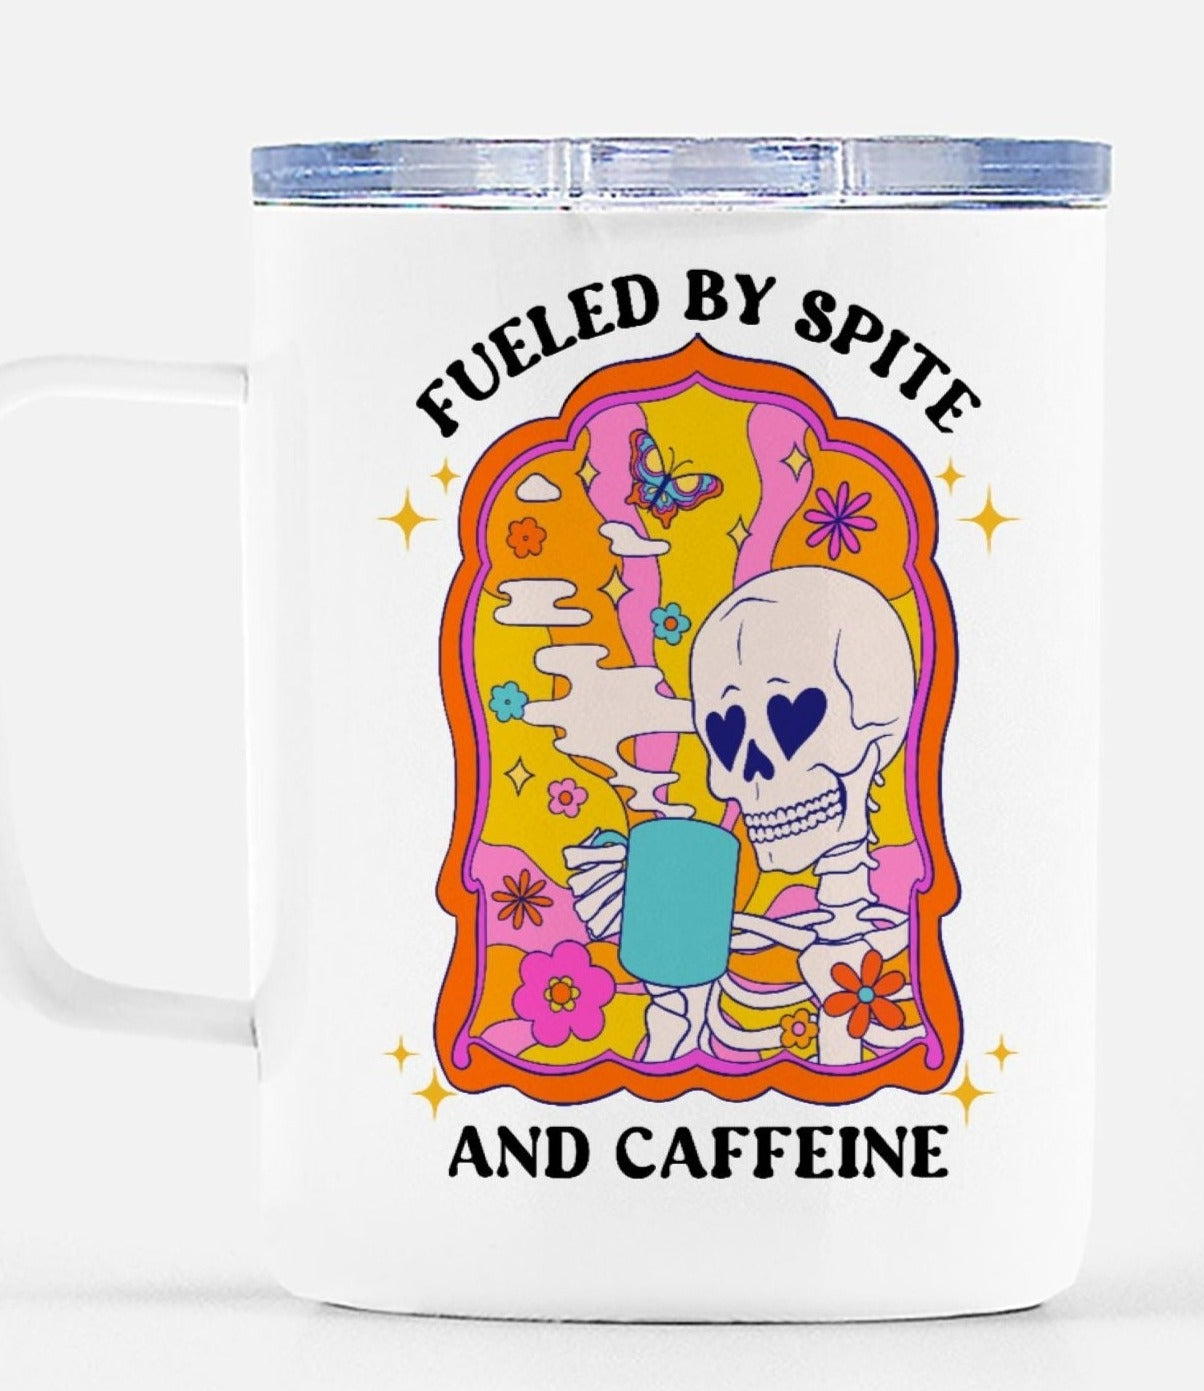 Fueled By Spite And Caffeine Mugs - UntamedEgo LLC.